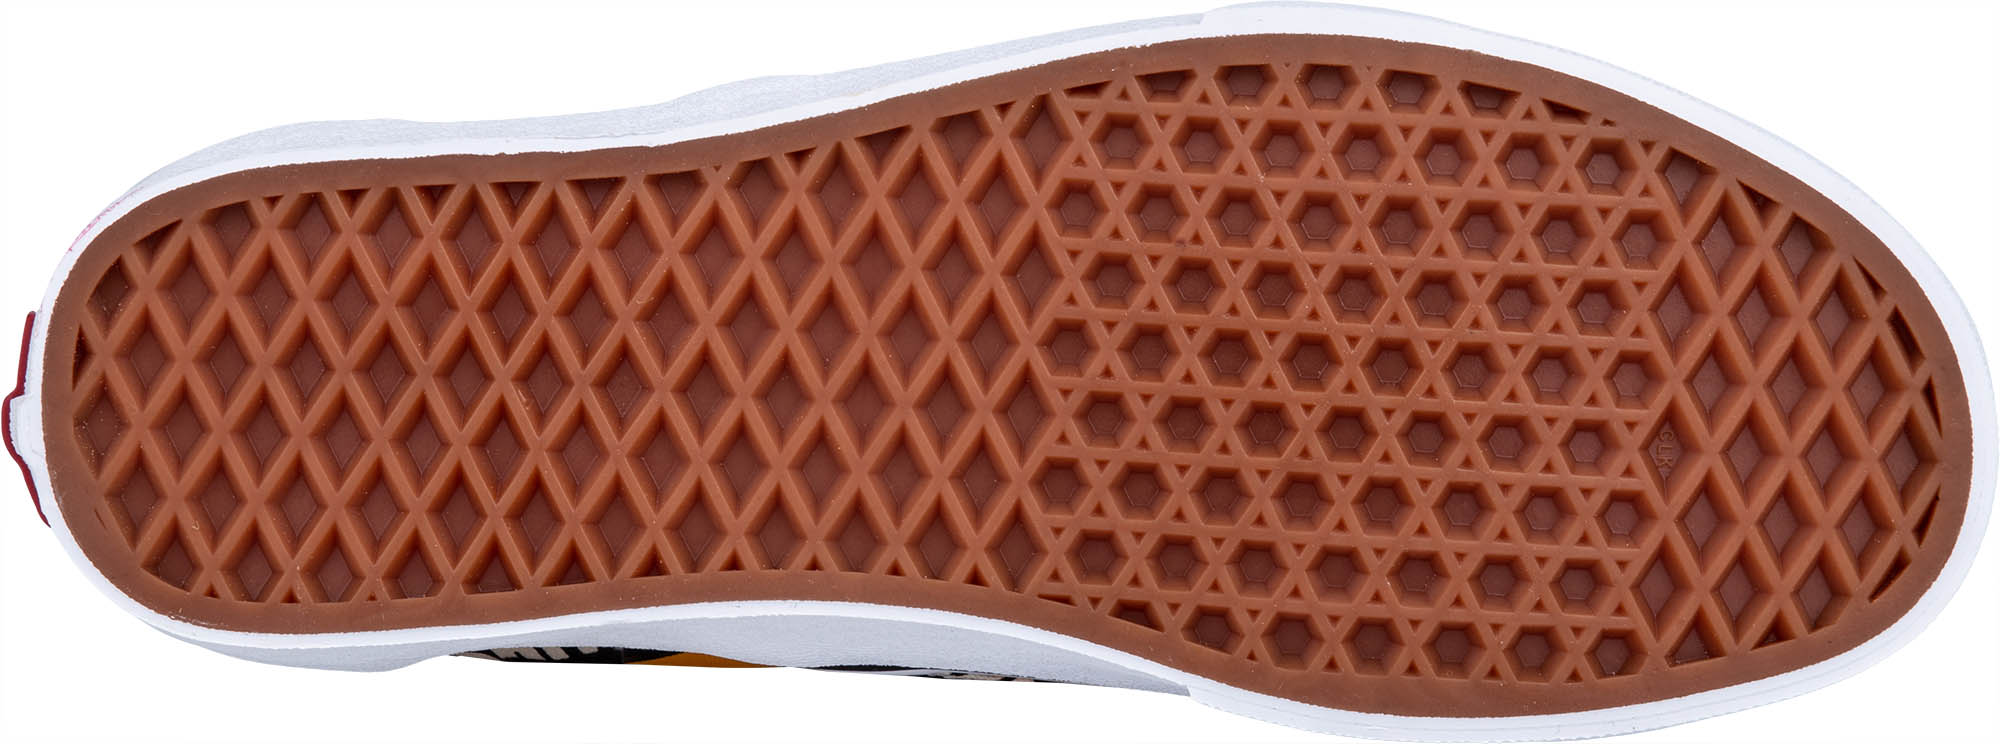 Unisex Slip-on Schuhe